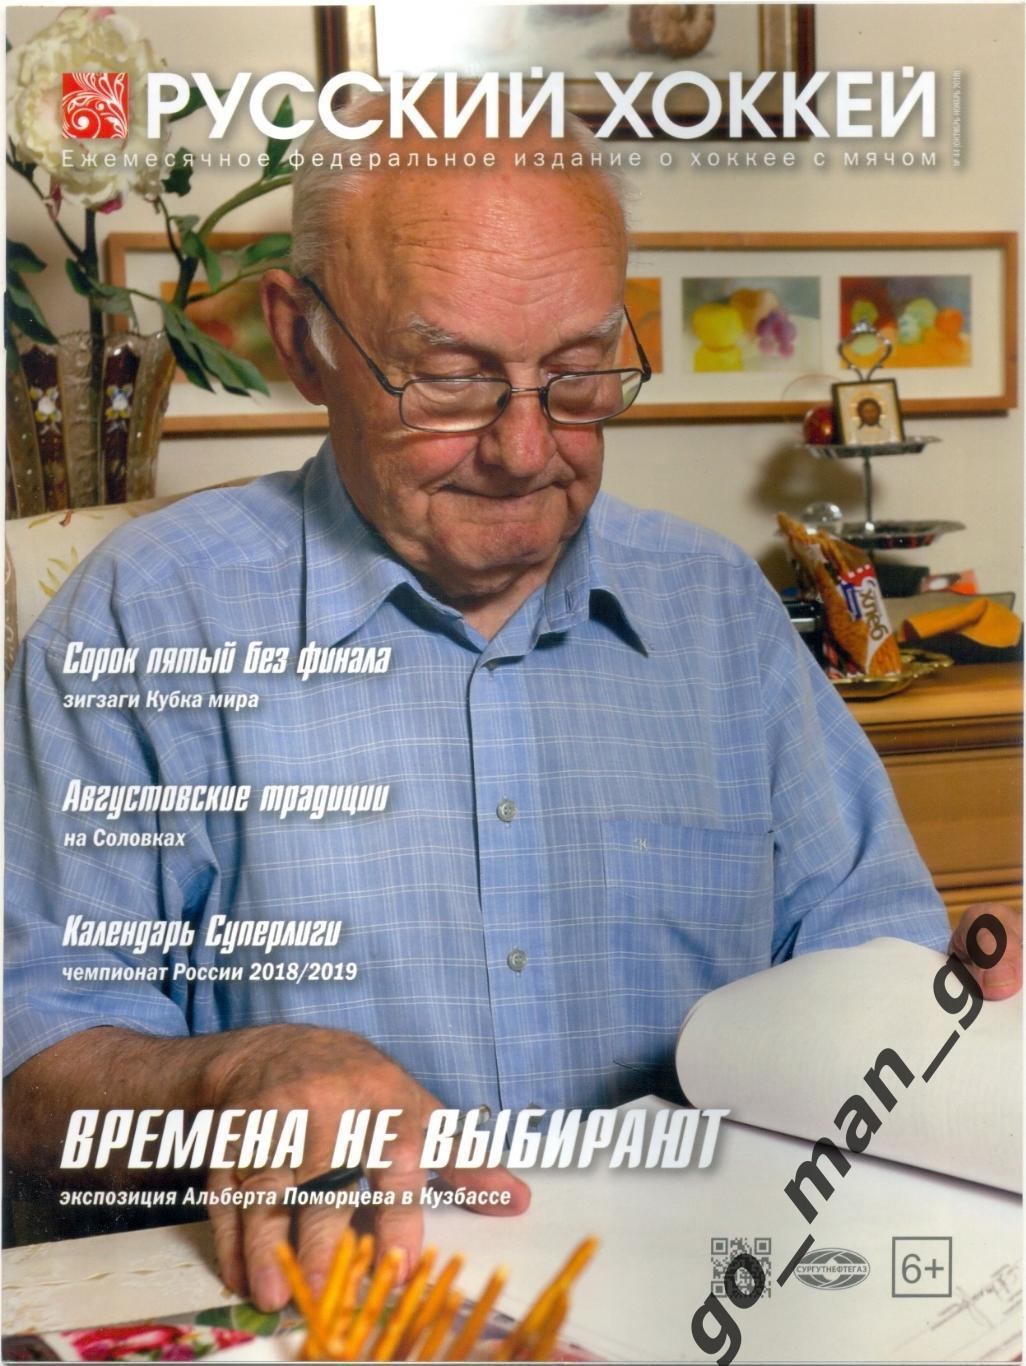 Журнал РУССКИЙ ХОККЕЙ № 44, октябрь-ноябрь 2018.